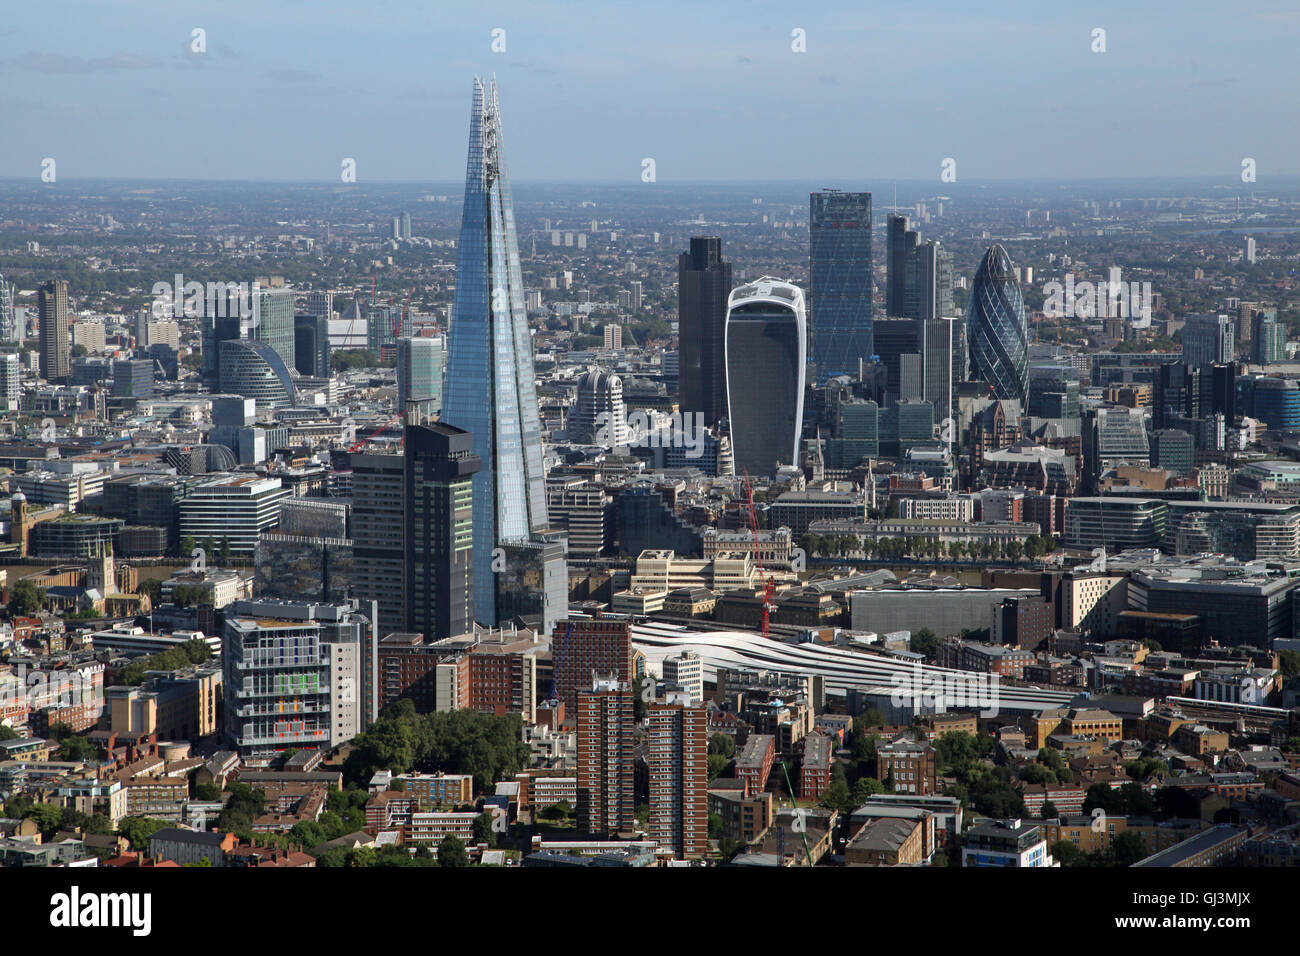 Luftaufnahme der Shard und City of London Skyline mit Gurke, Walkietalkie und Käsereibe Gebäuden, UK Stockfoto